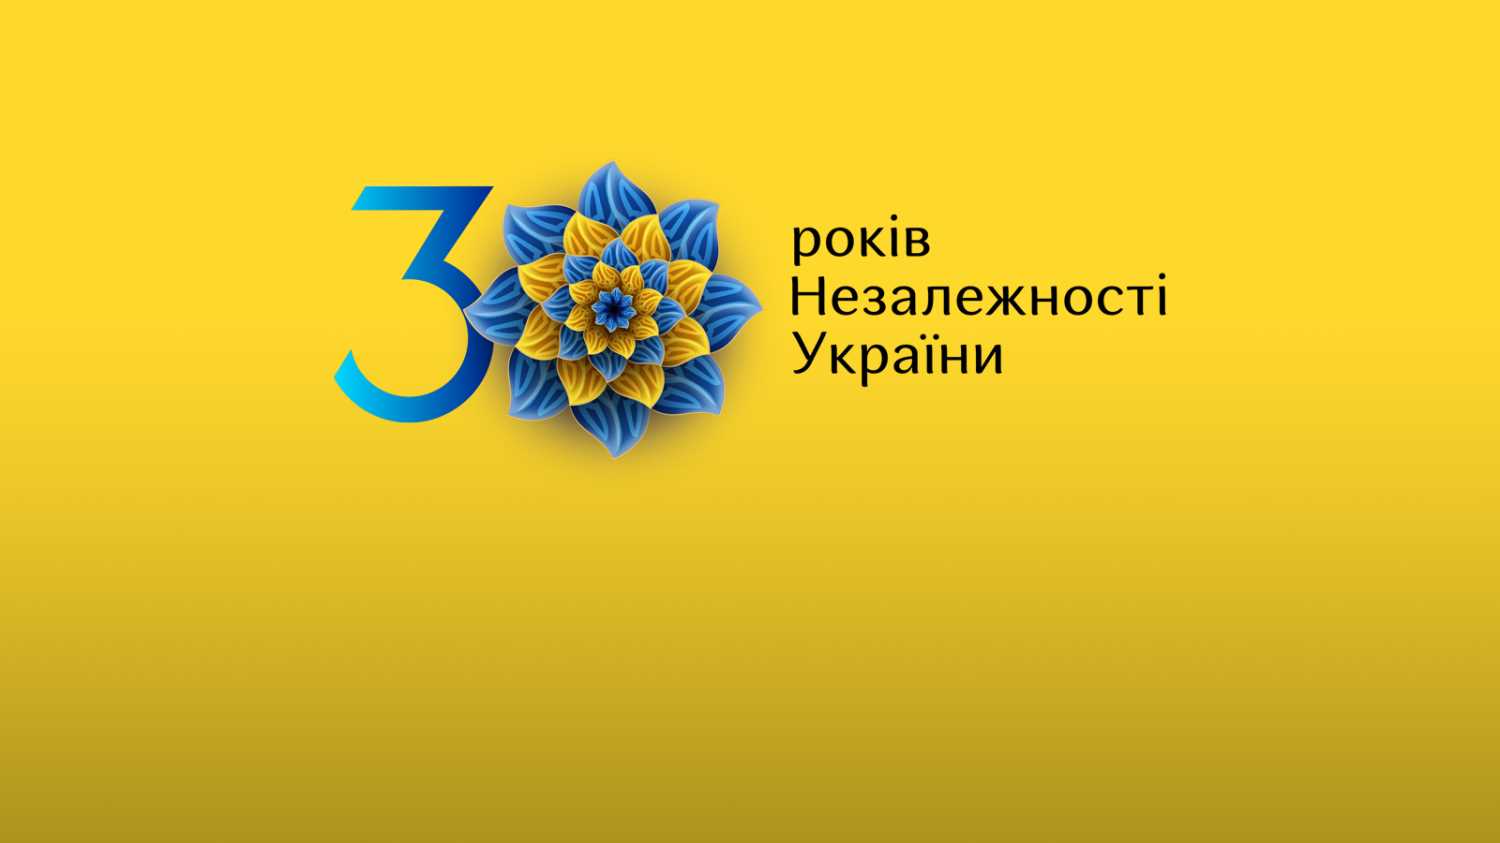 До 30-річчя Незалежності України Офіс Президента України розробив стилізовані банери та фоторамки для використання в соцмережах